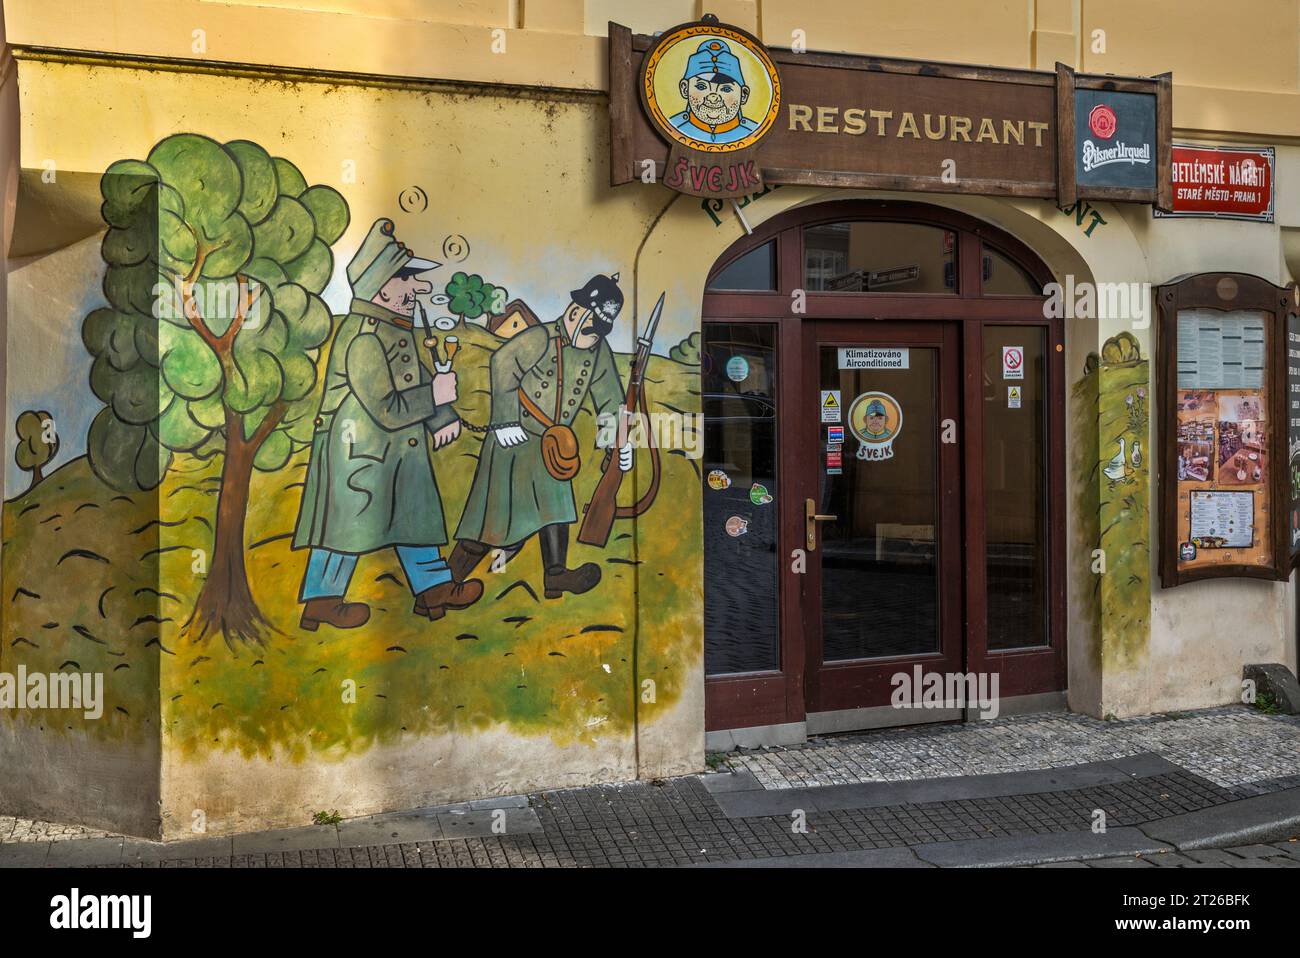 Good Soldier Švejk, peinture murale à l'entrée du restaurant, quartier Staré Město (vieille ville), Prague, République tchèque Banque D'Images